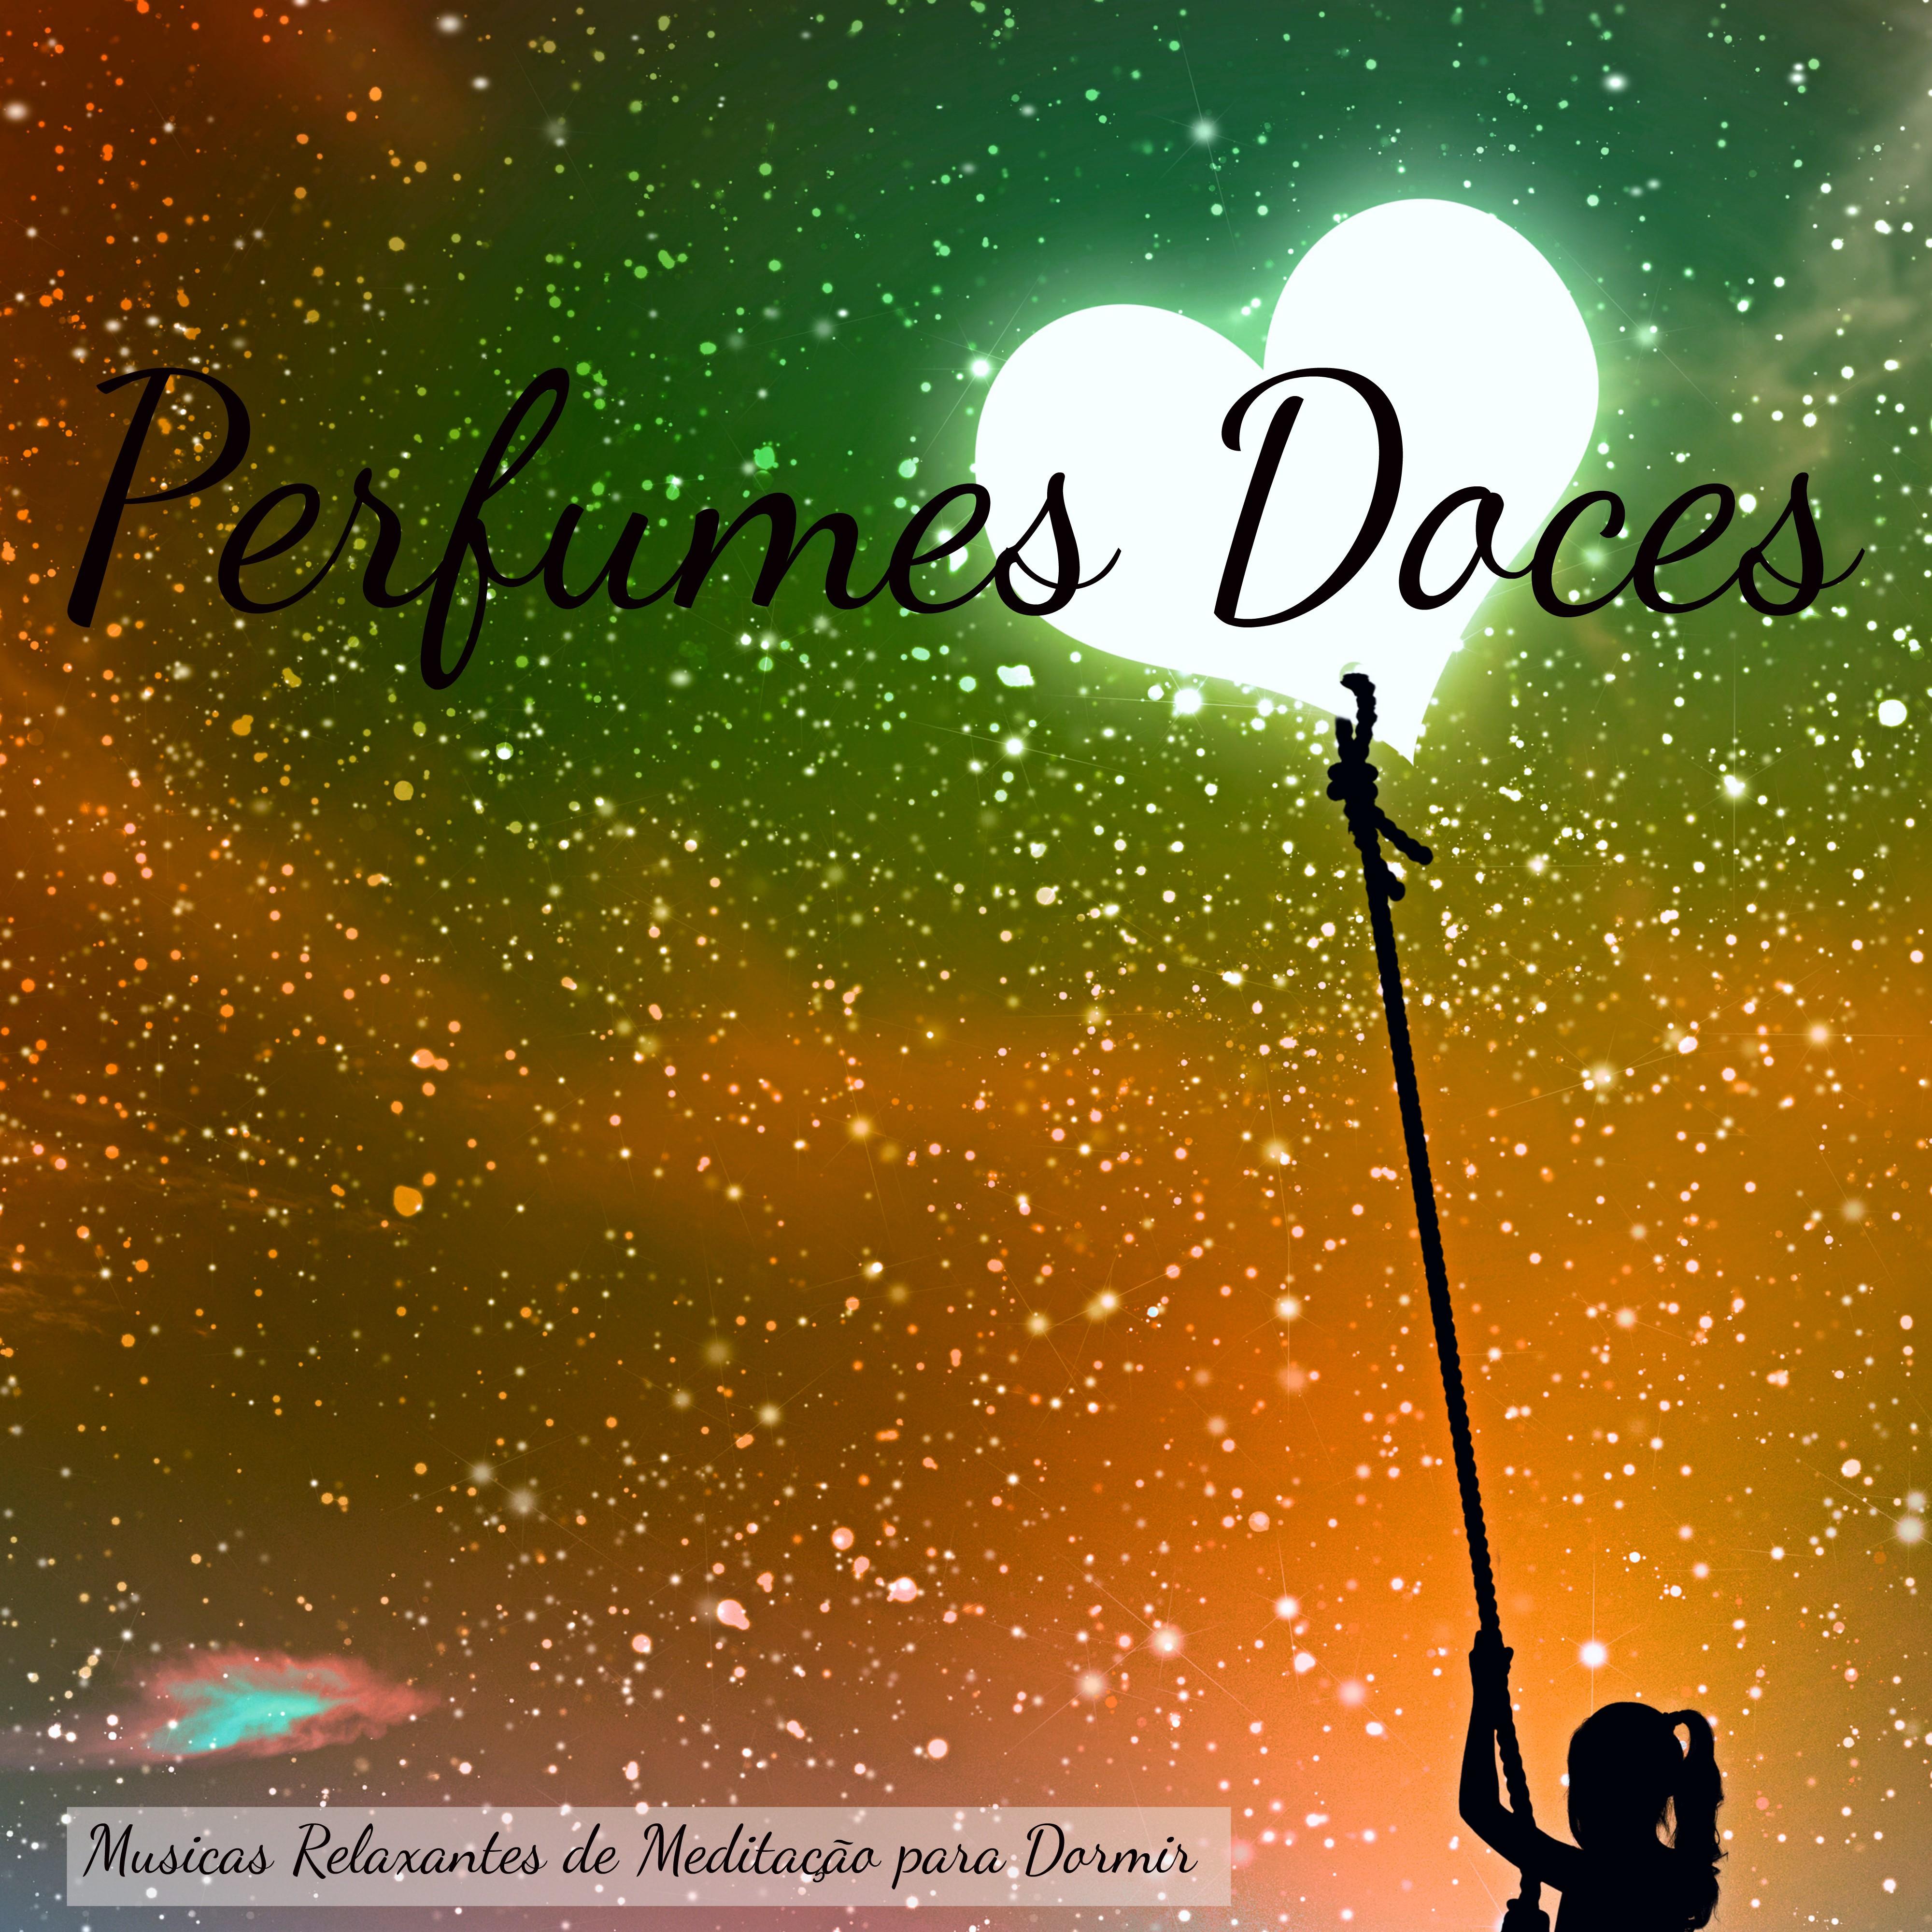 Perfumes Doces  Musicas Relaxantes de Medita o para Dormir, Can es com Sons de Natureza Instrumentais